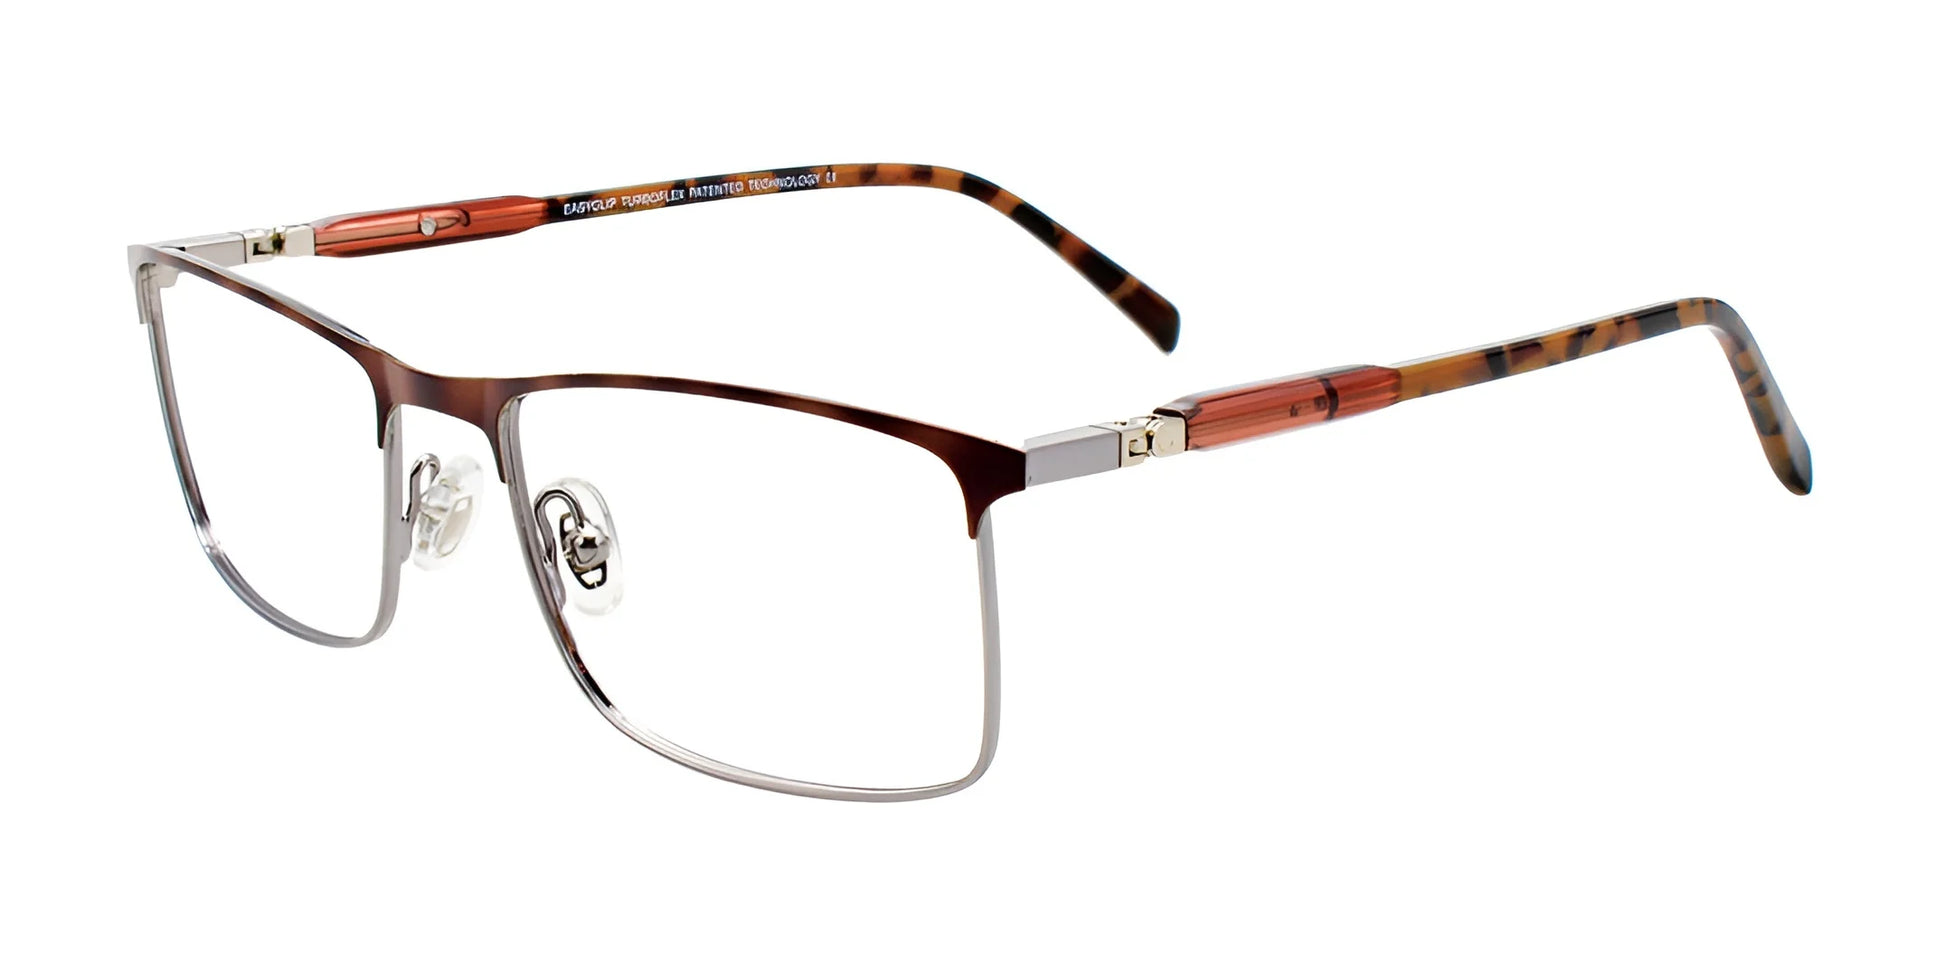 EasyClip EC554 Eyeglasses Satin Brown & Silver